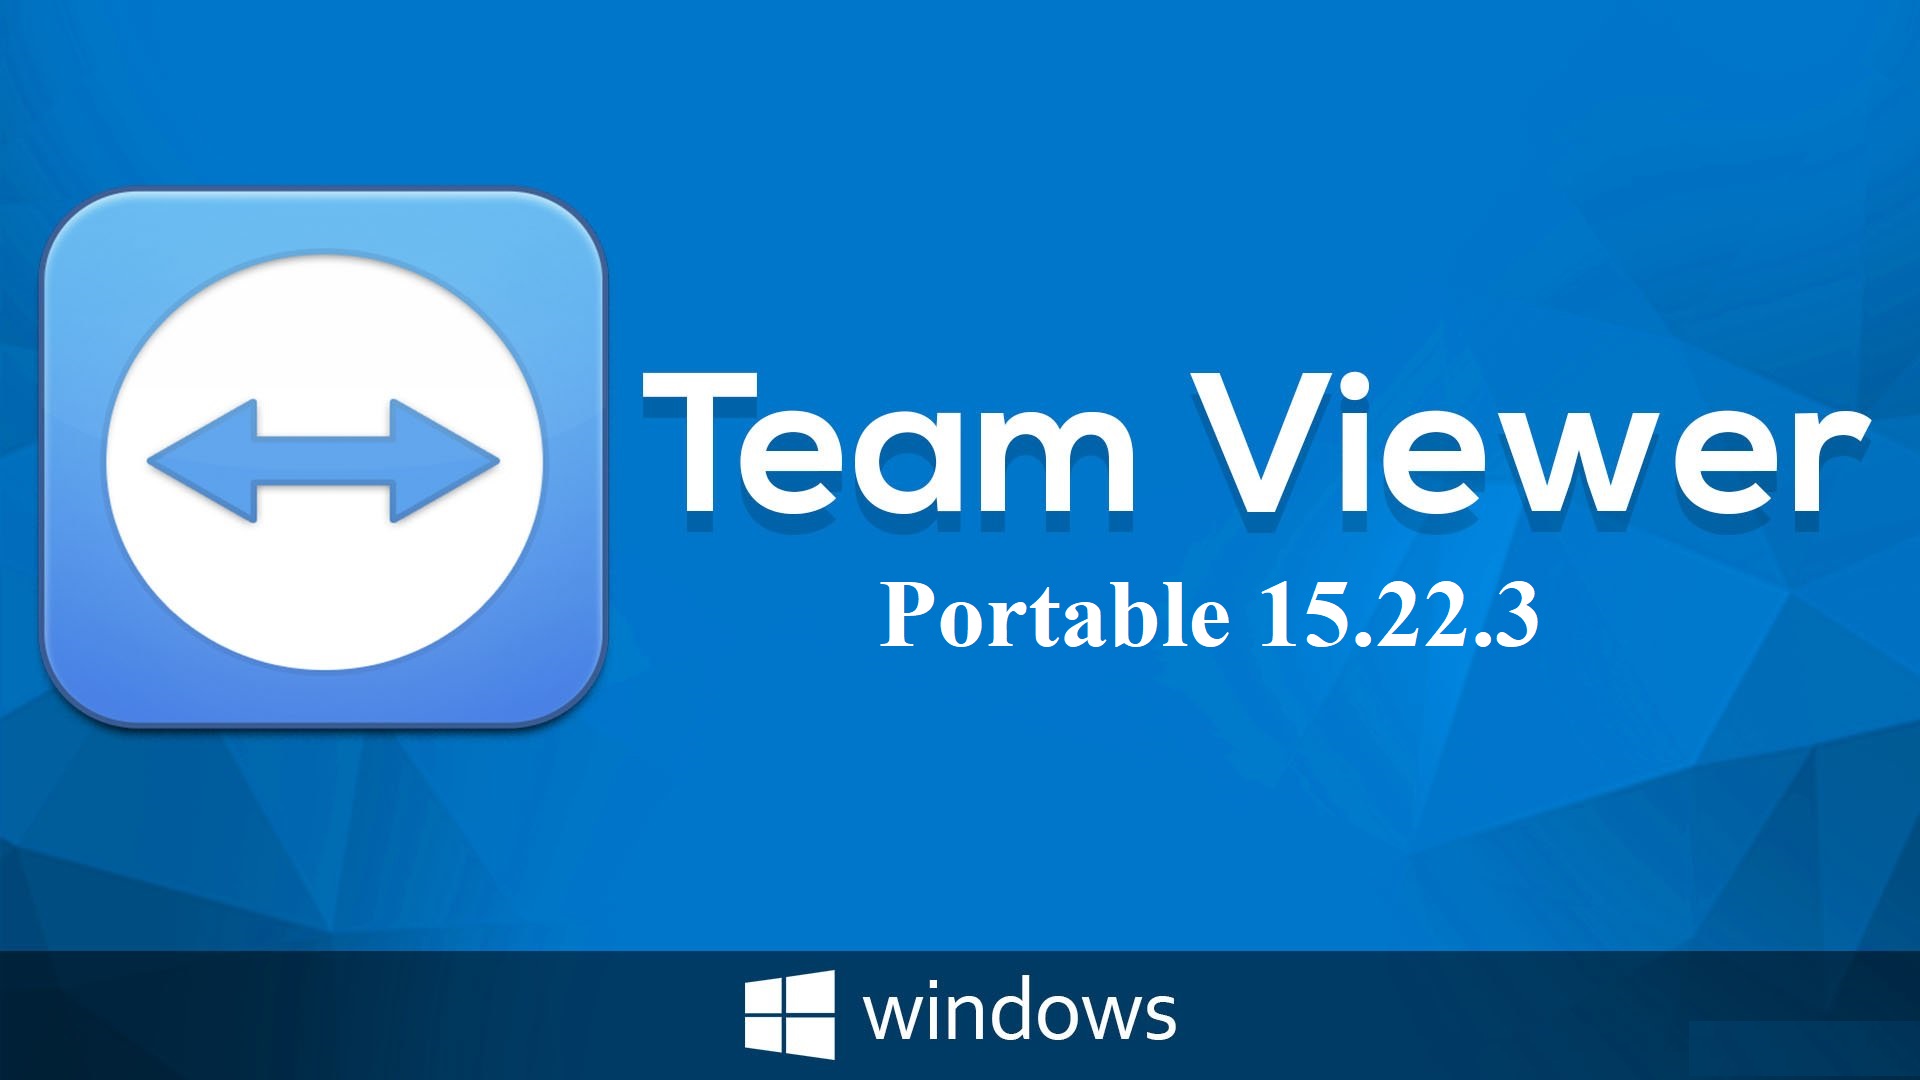 Tải Phần Mềm TeamViewer Portable 15.22.3 - Link Full Hướng Dẫn Cài Đặt Chi Tiết - Phanmemantoan.net - Download An Toàn